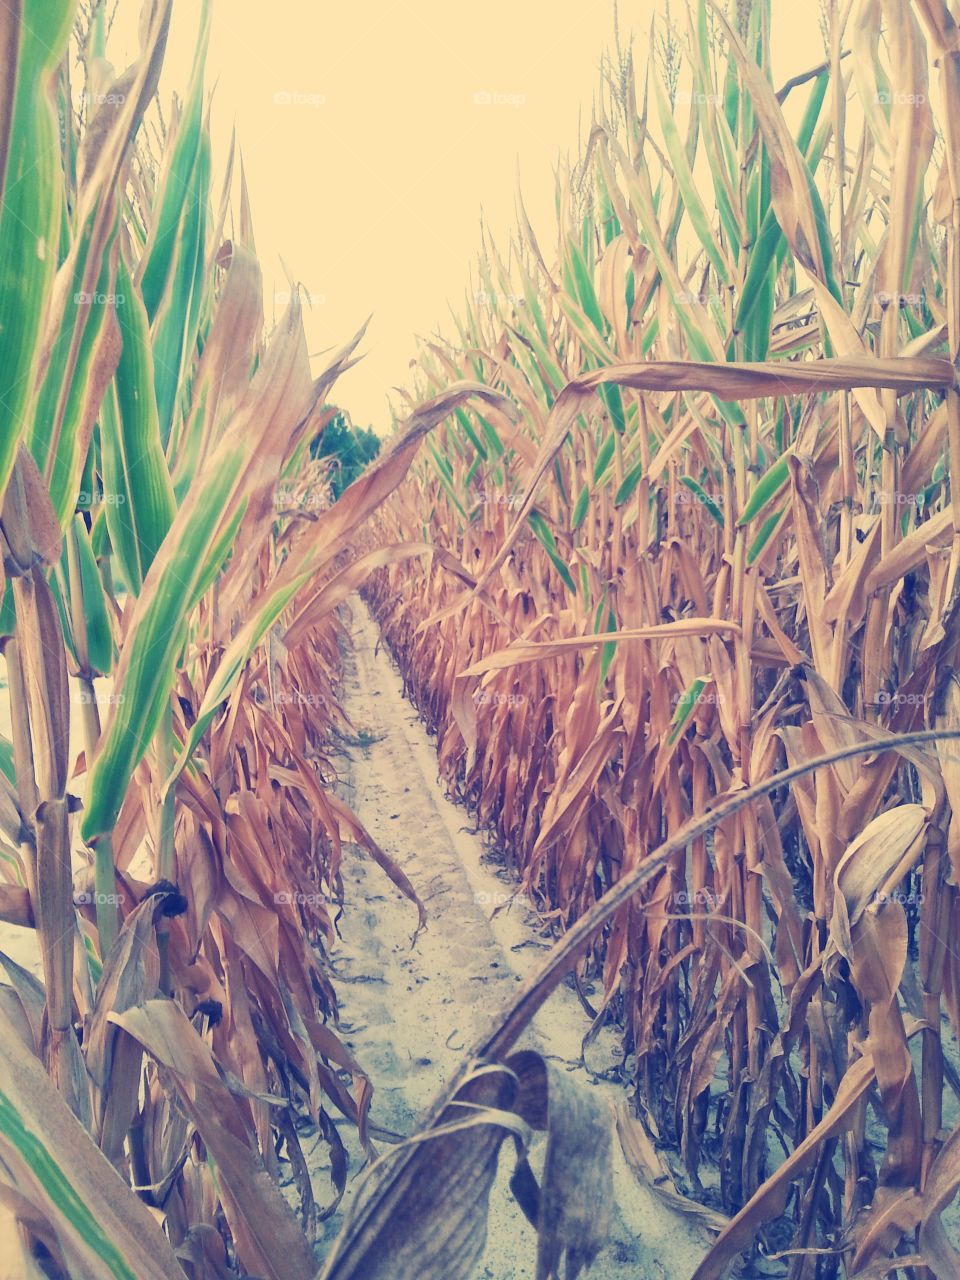 inside of a corn field. love the veiw